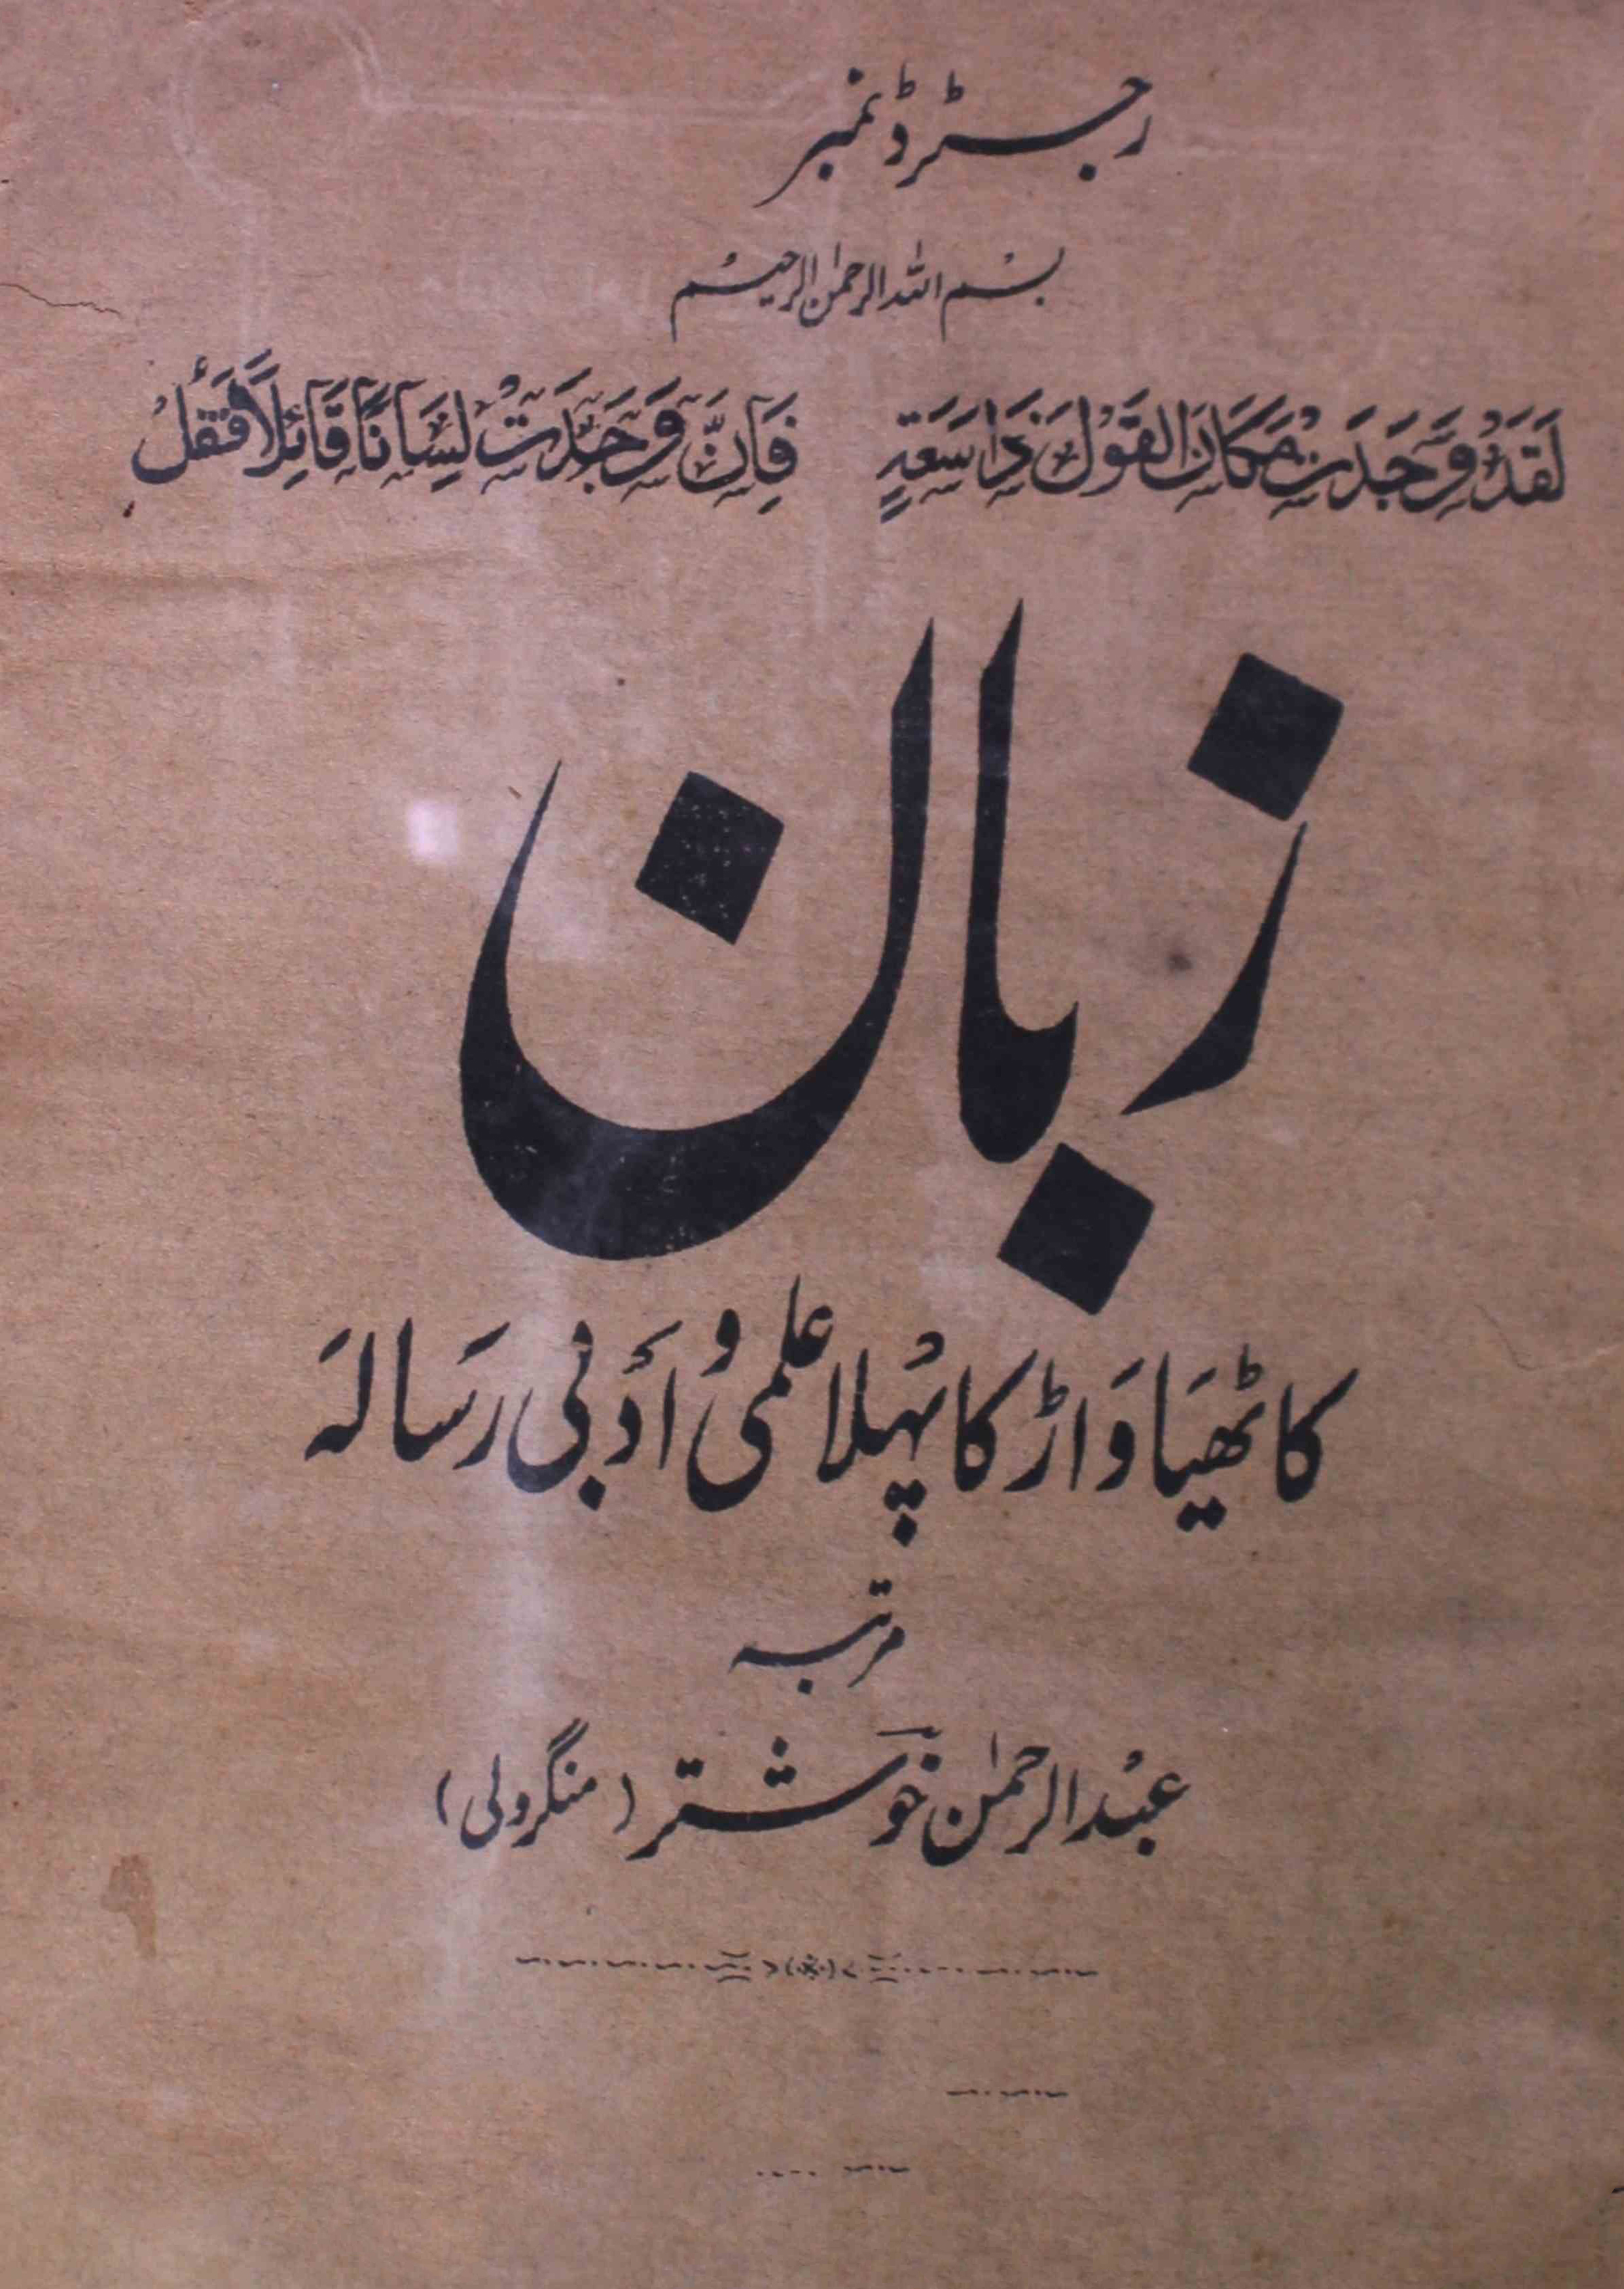 zaban-shumara-number-005-abdur-rahman-khushtar-mangroli-magazines